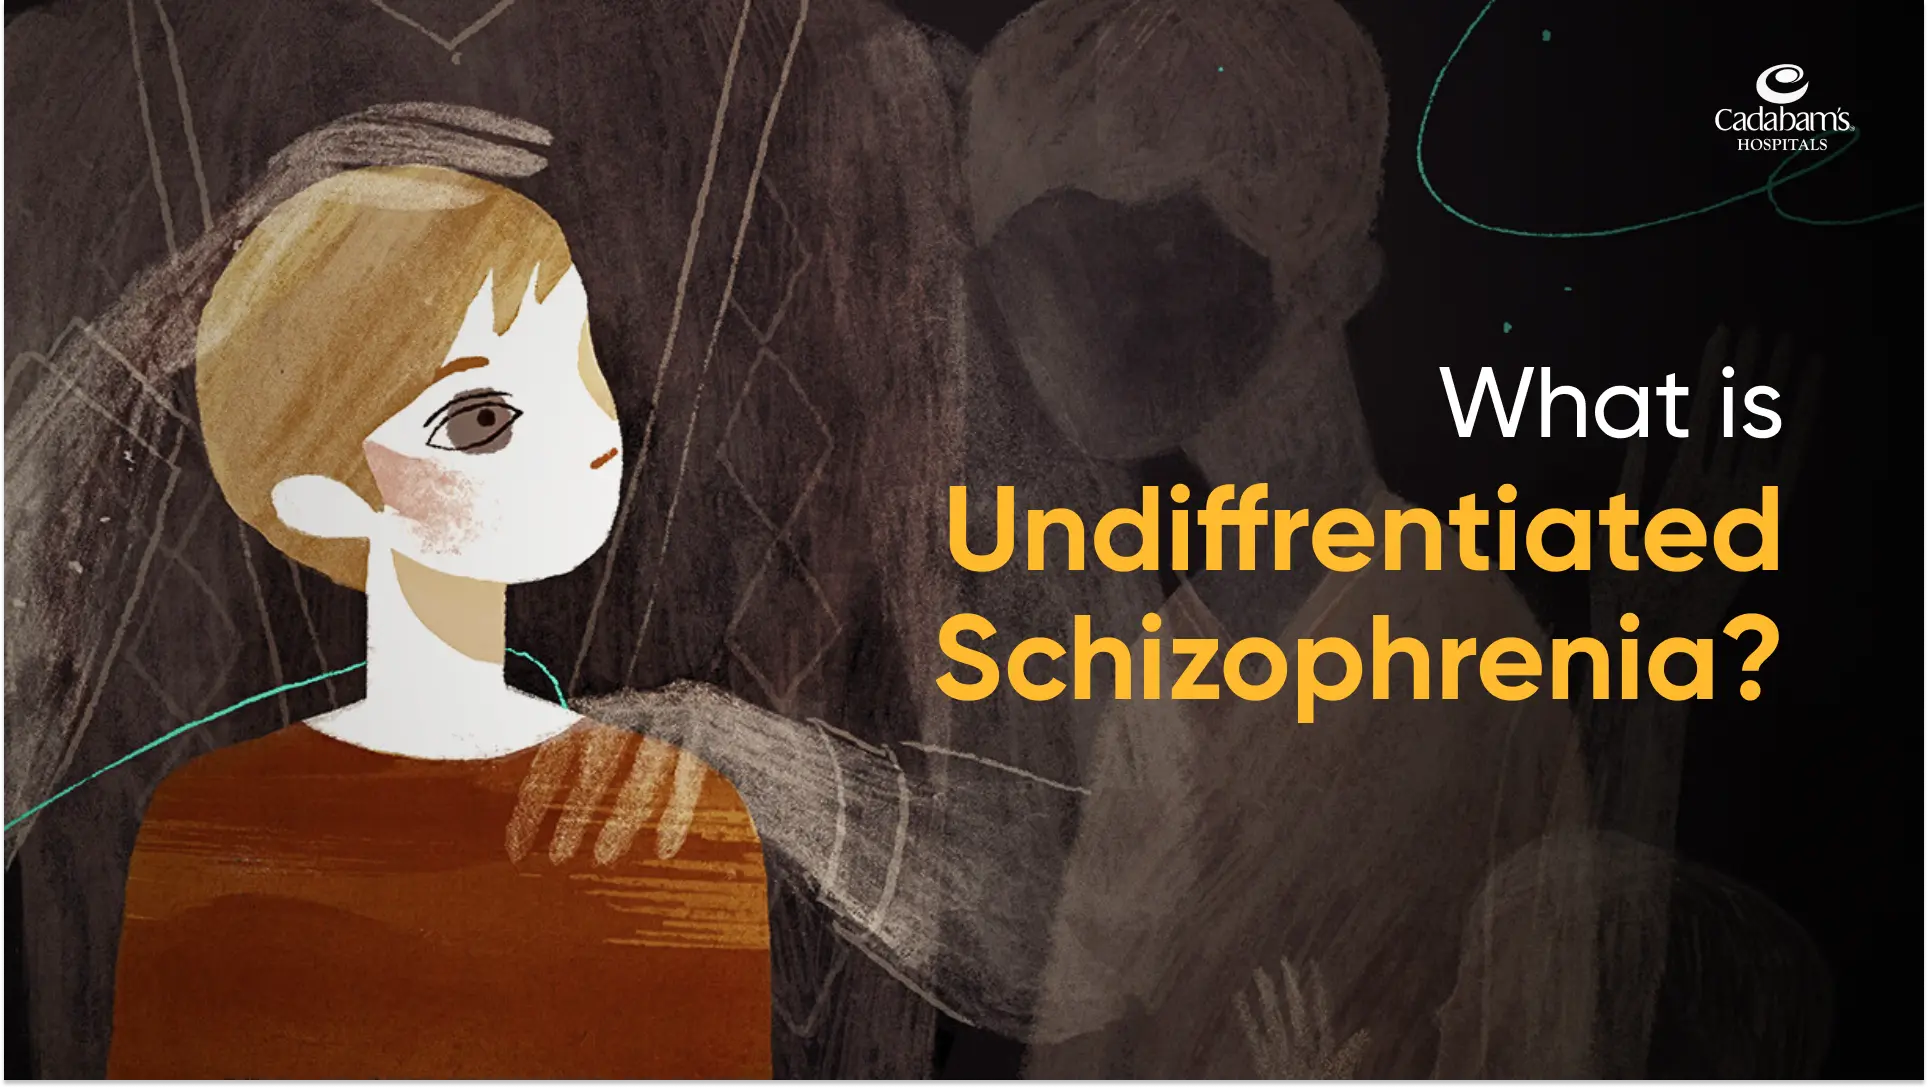 schizophrenia symptoms